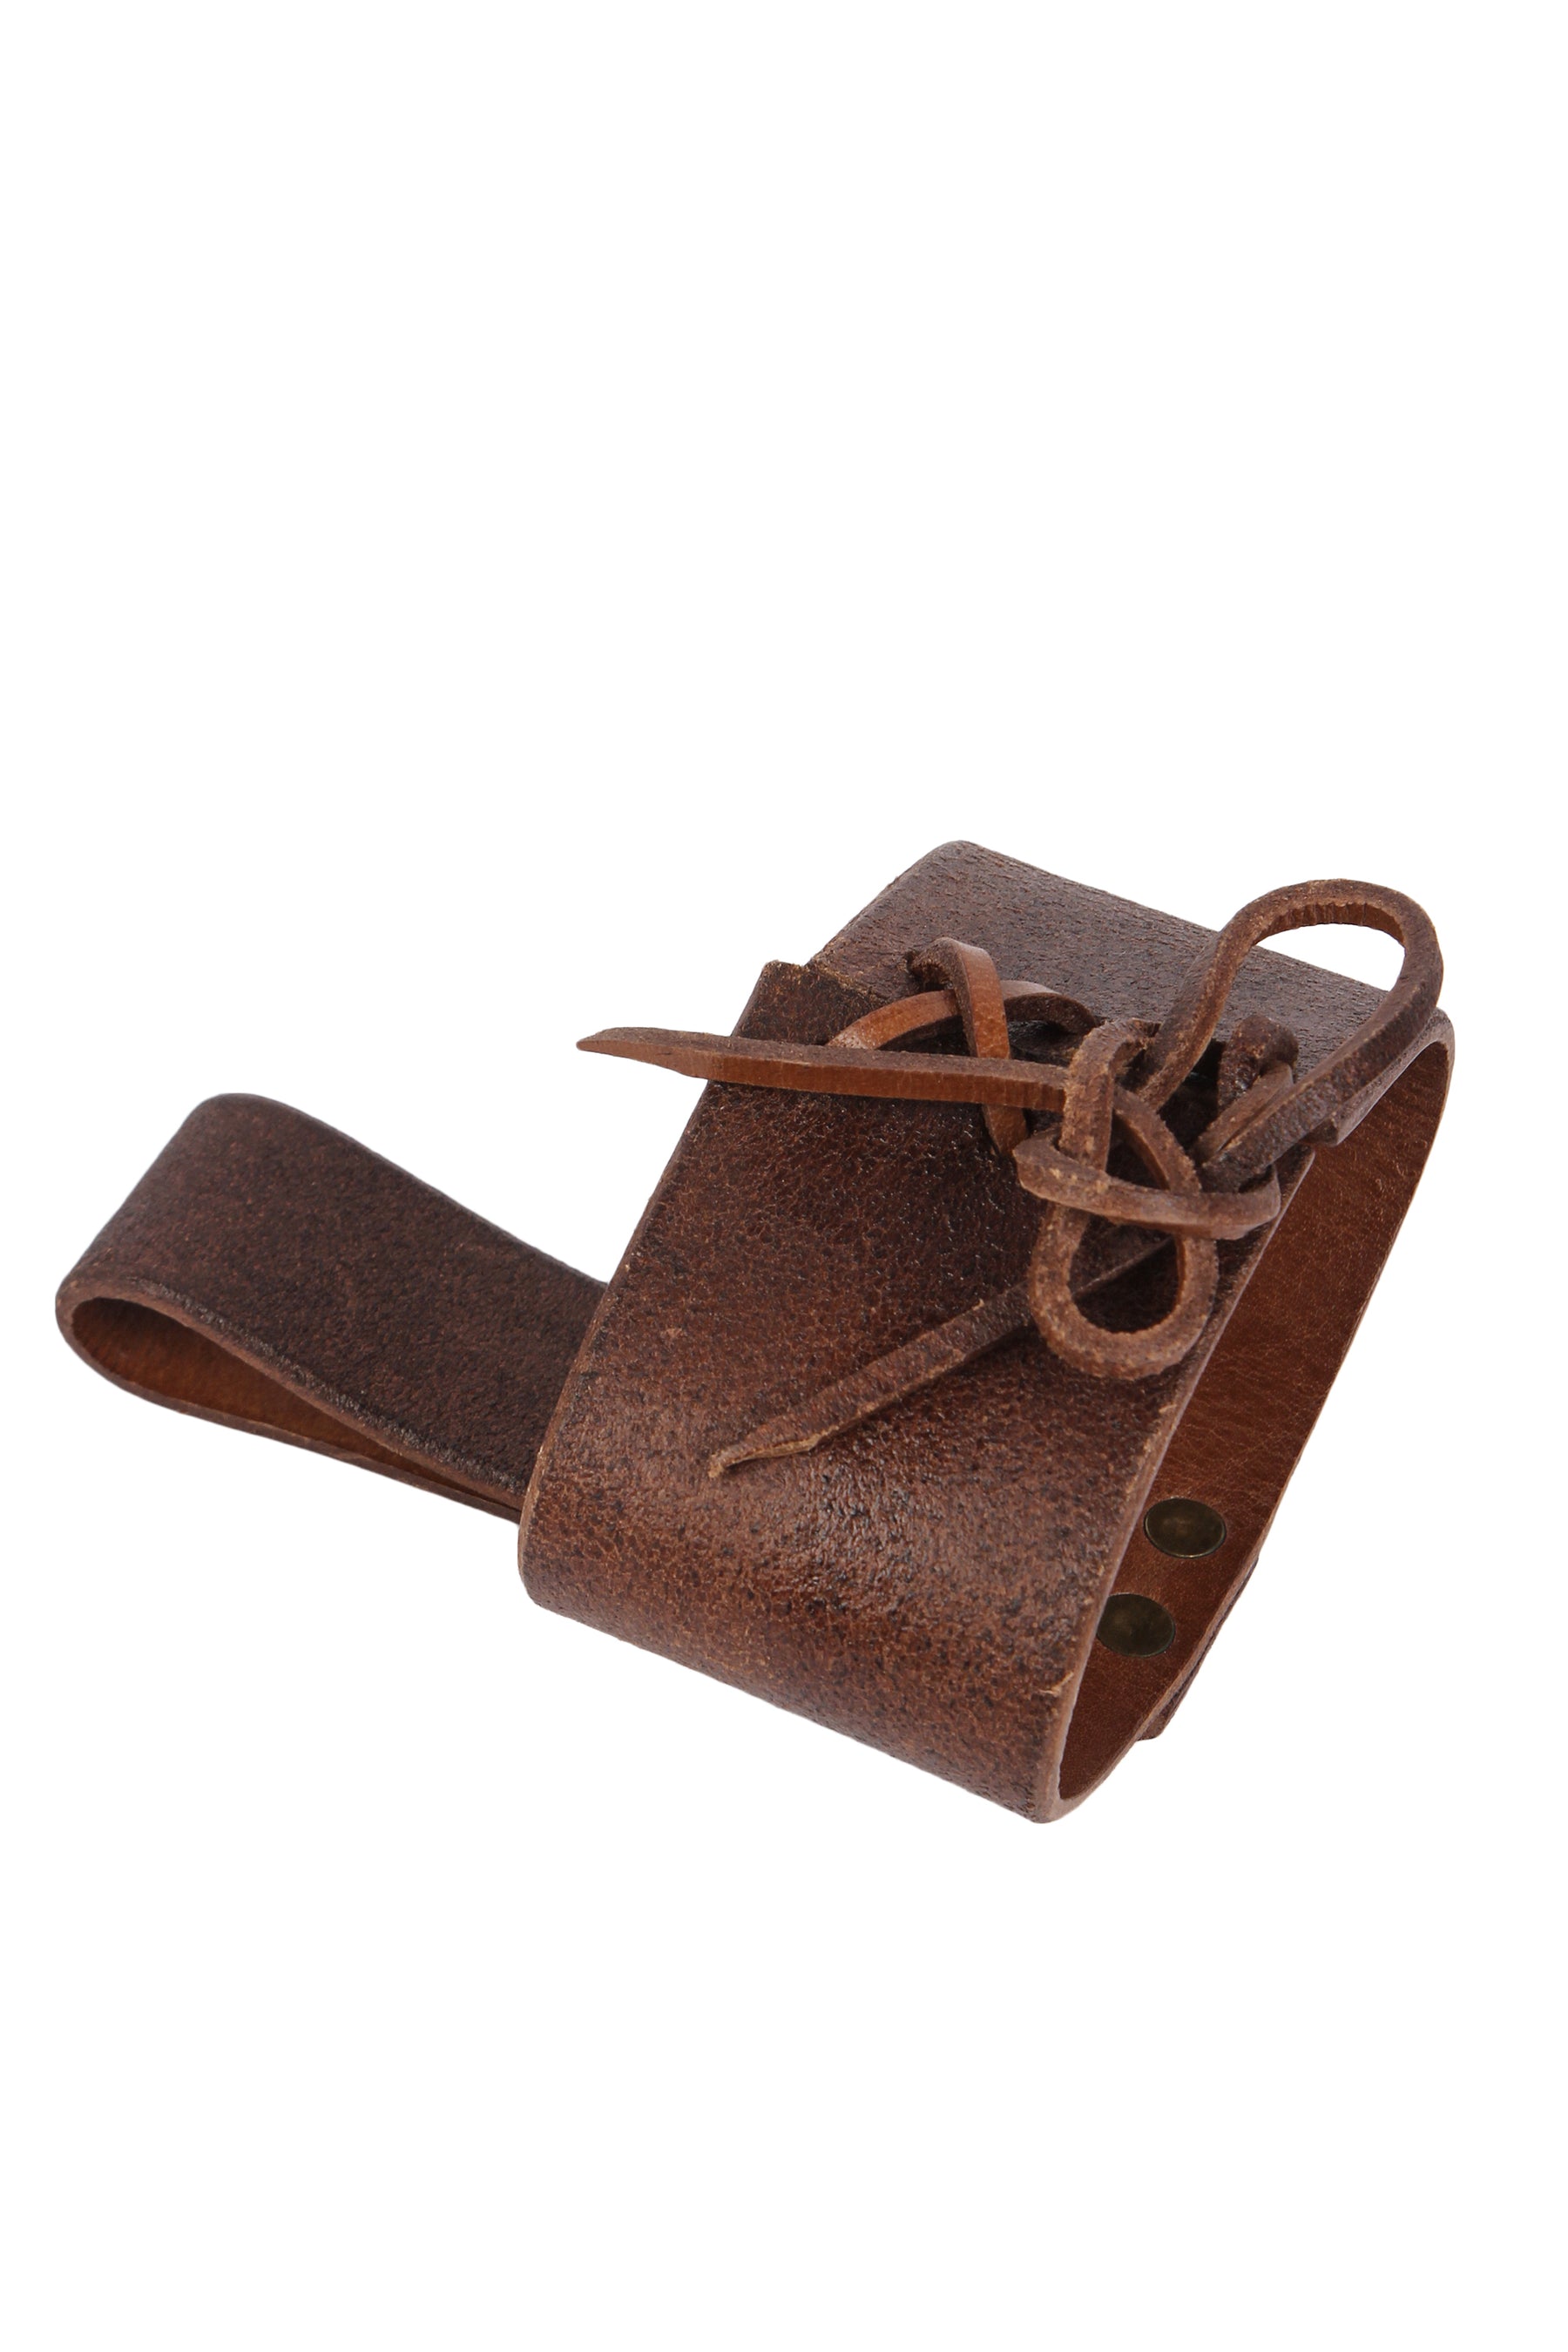 Horn holder for the belt, medium